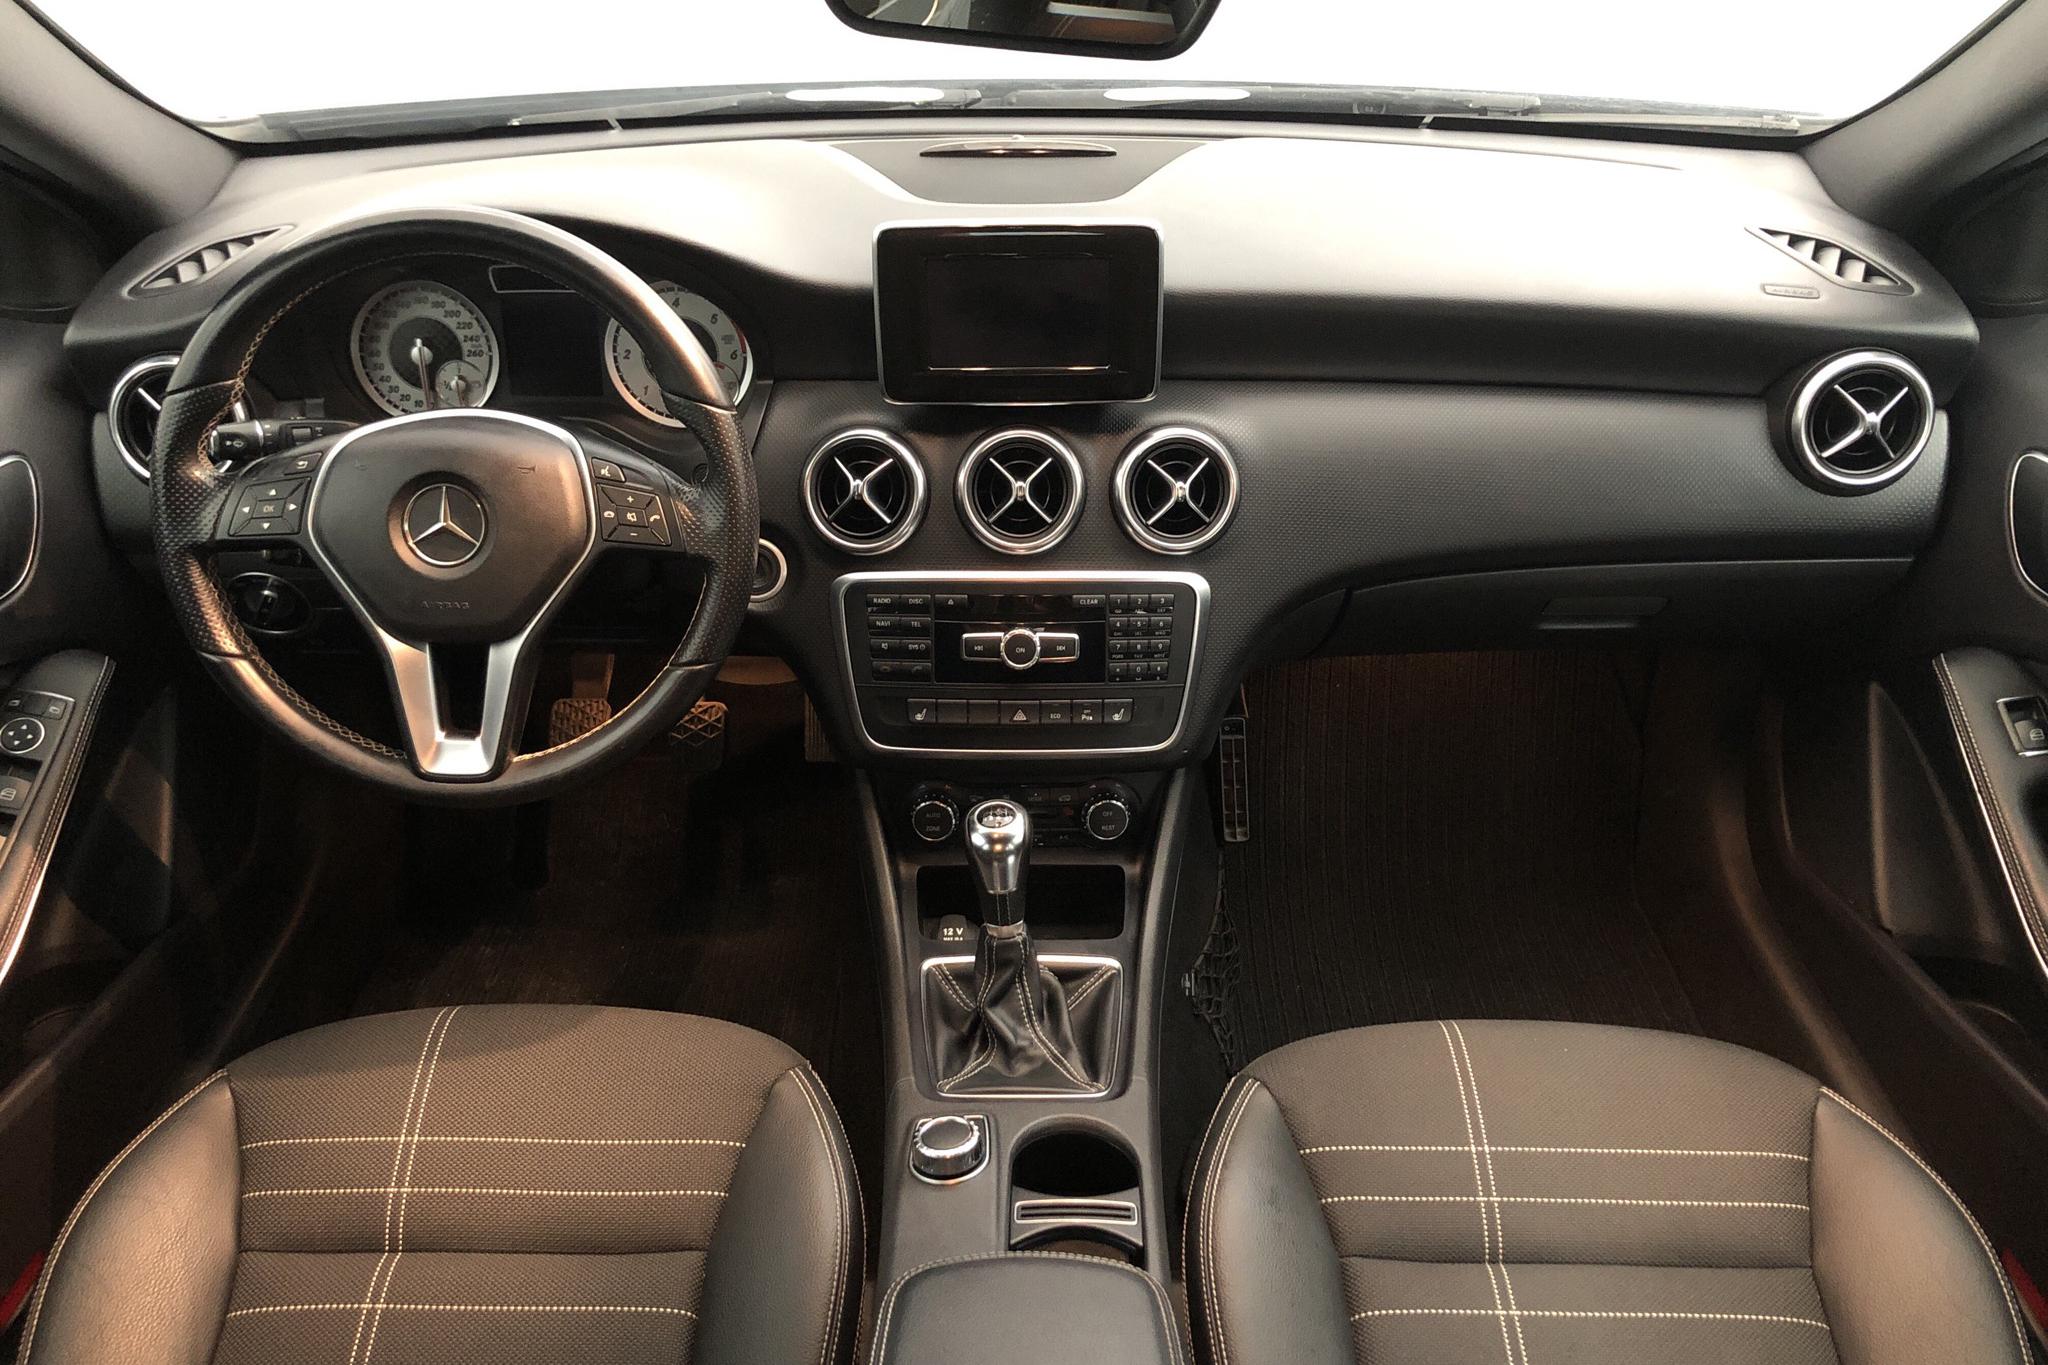 Mercedes A 180 CDI 5dr W176 (109hk) - 123 680 km - Manual - Dark Grey - 2014